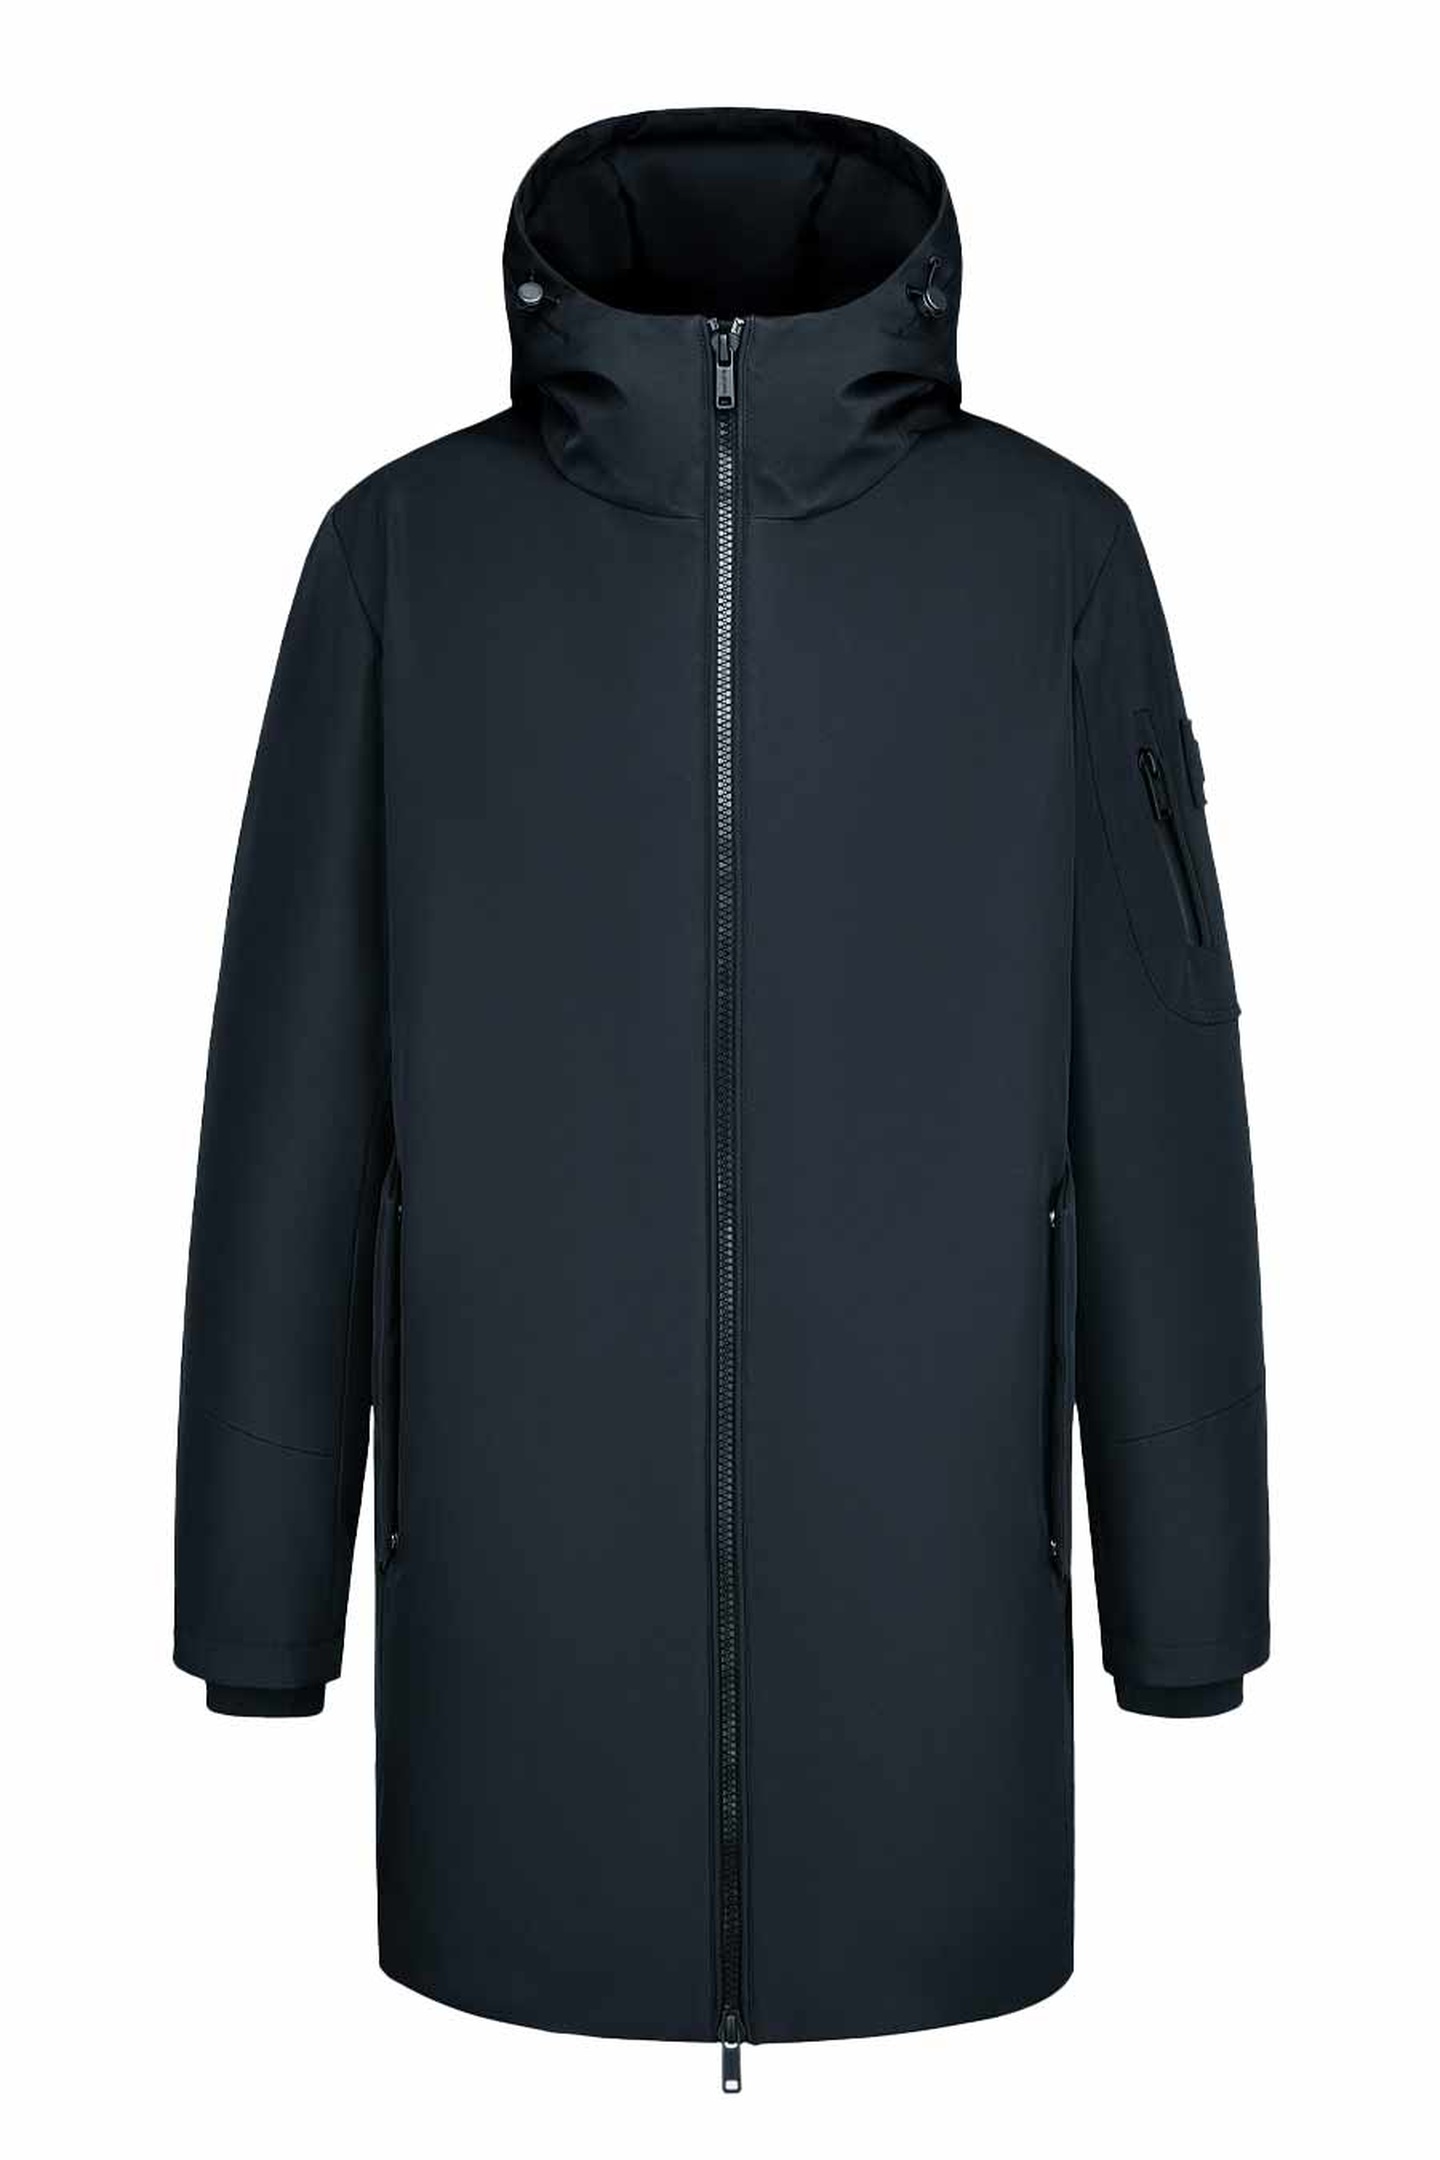 Куртка Albione 275Jm, цвет черный, размер 46 - фото 1